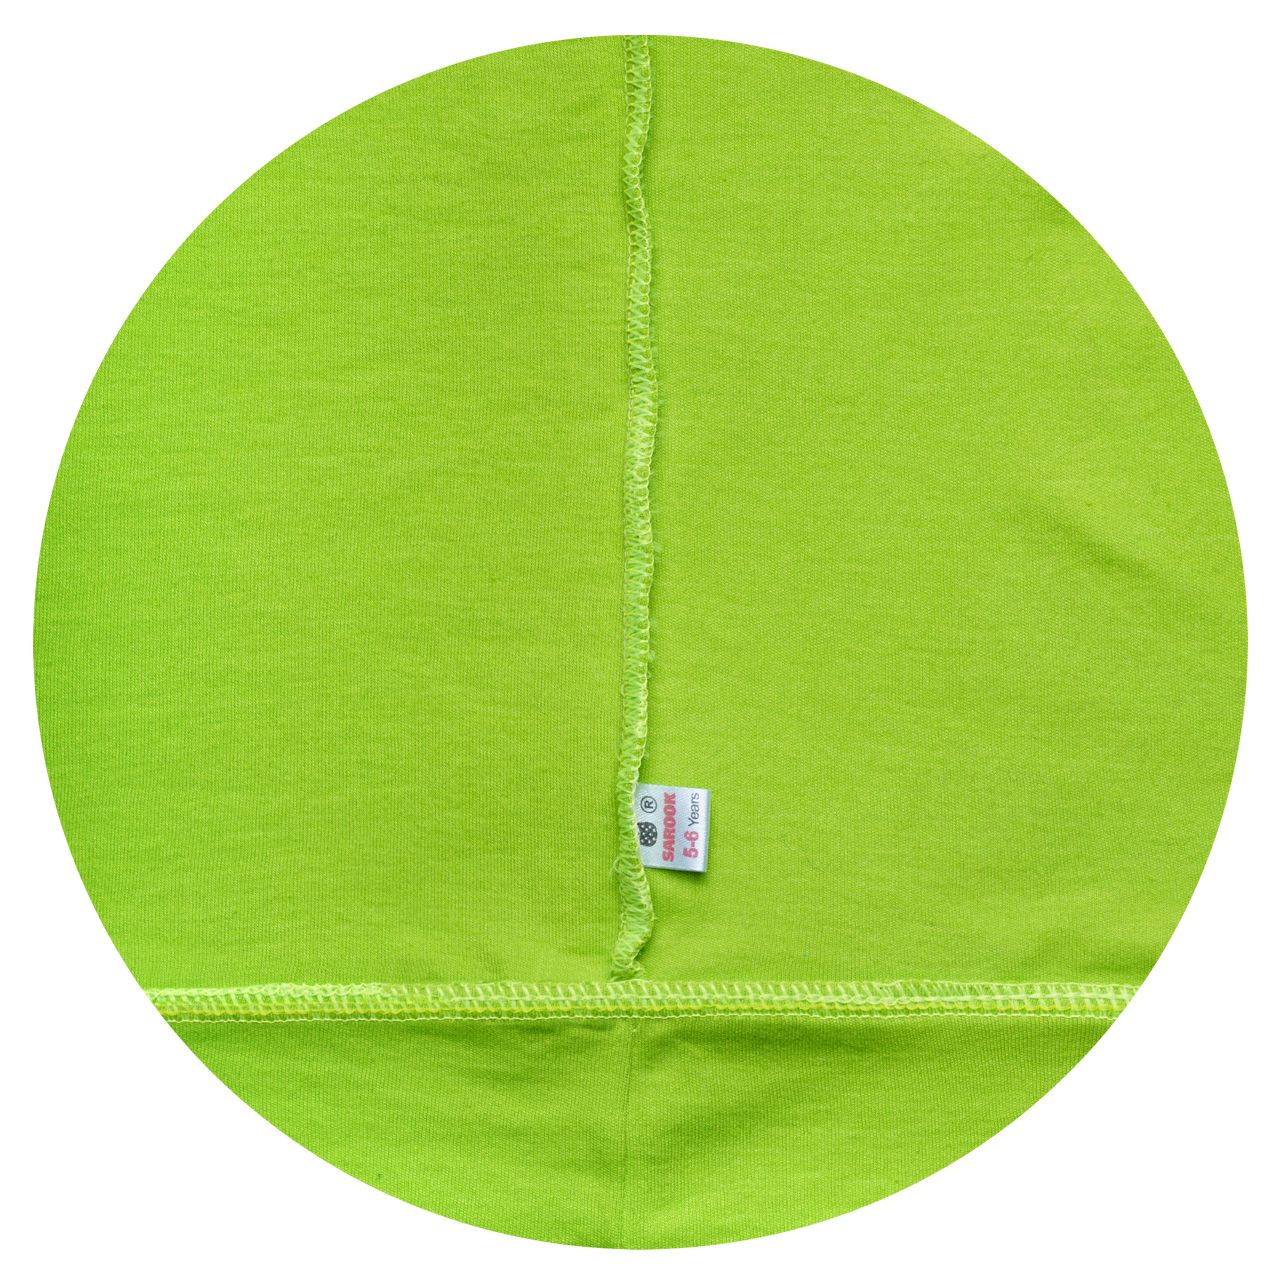 تی شرت آستین بلند بچگانه ساروک مدل SBSCH کد 04 رنگ سبز فسفری  -  - 2